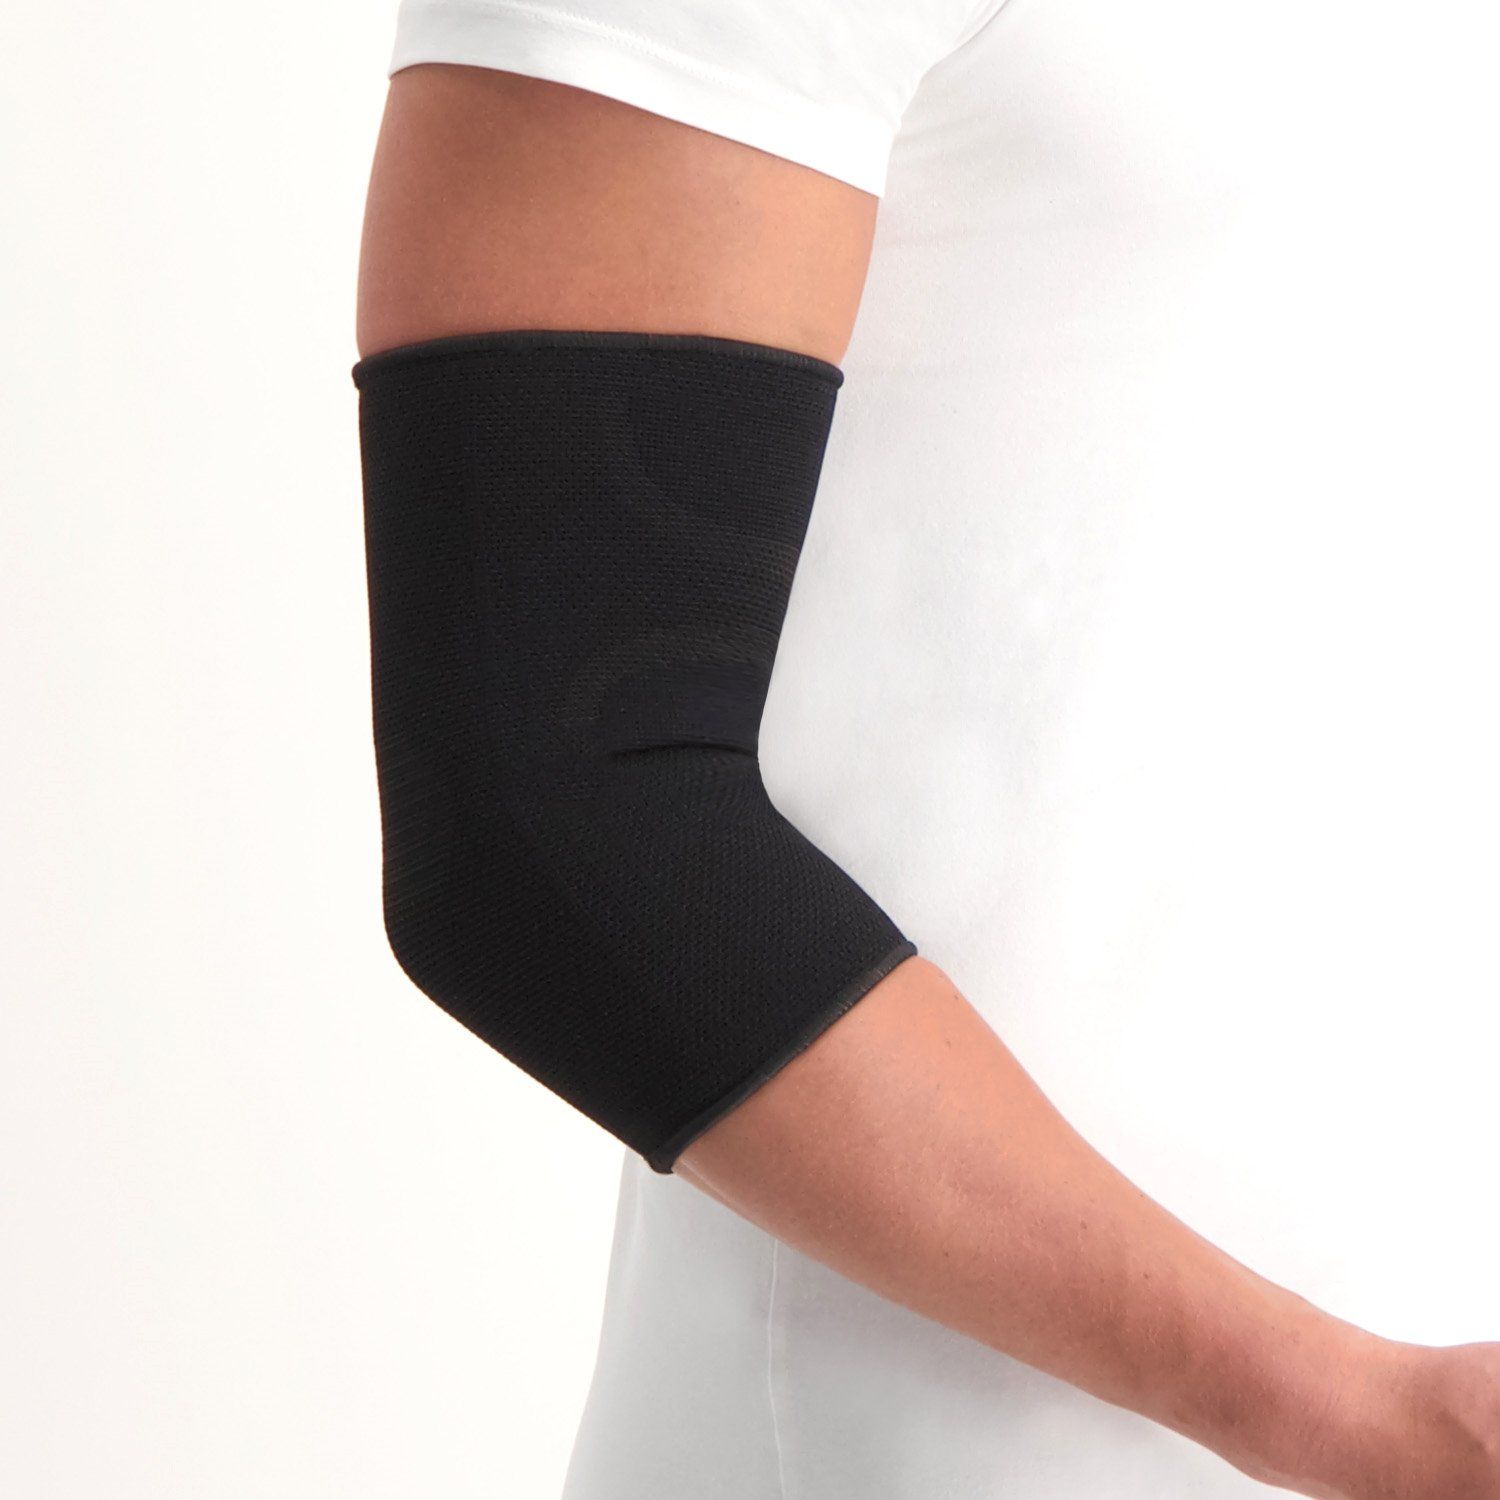 medidu elbow support around arm